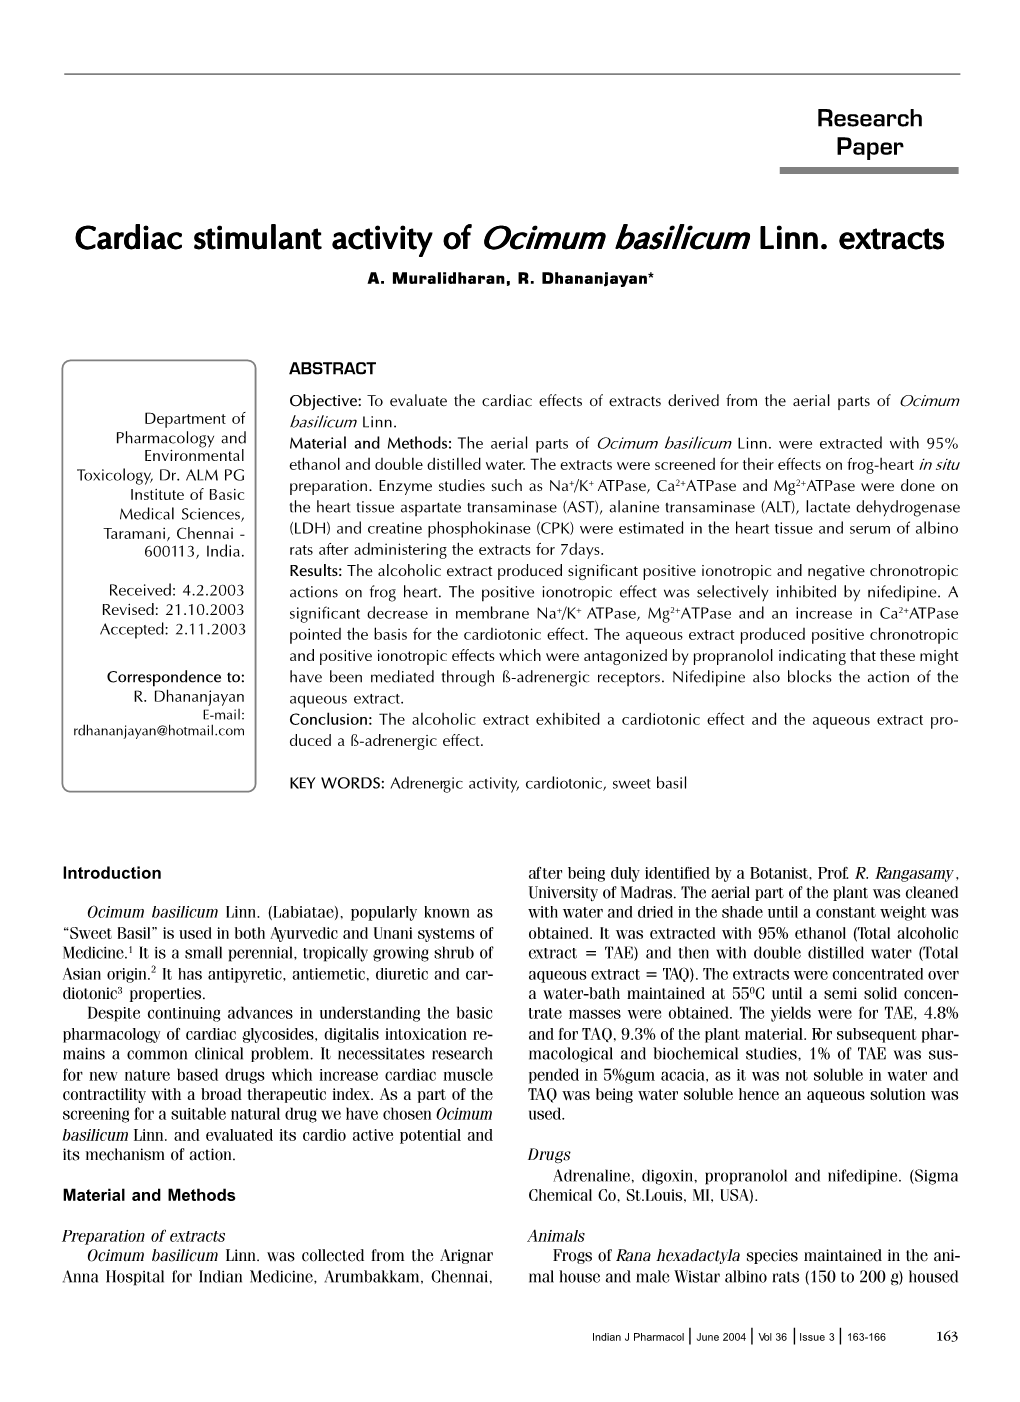 Cardiac Stimulant Activity of Cardiac Stimulant